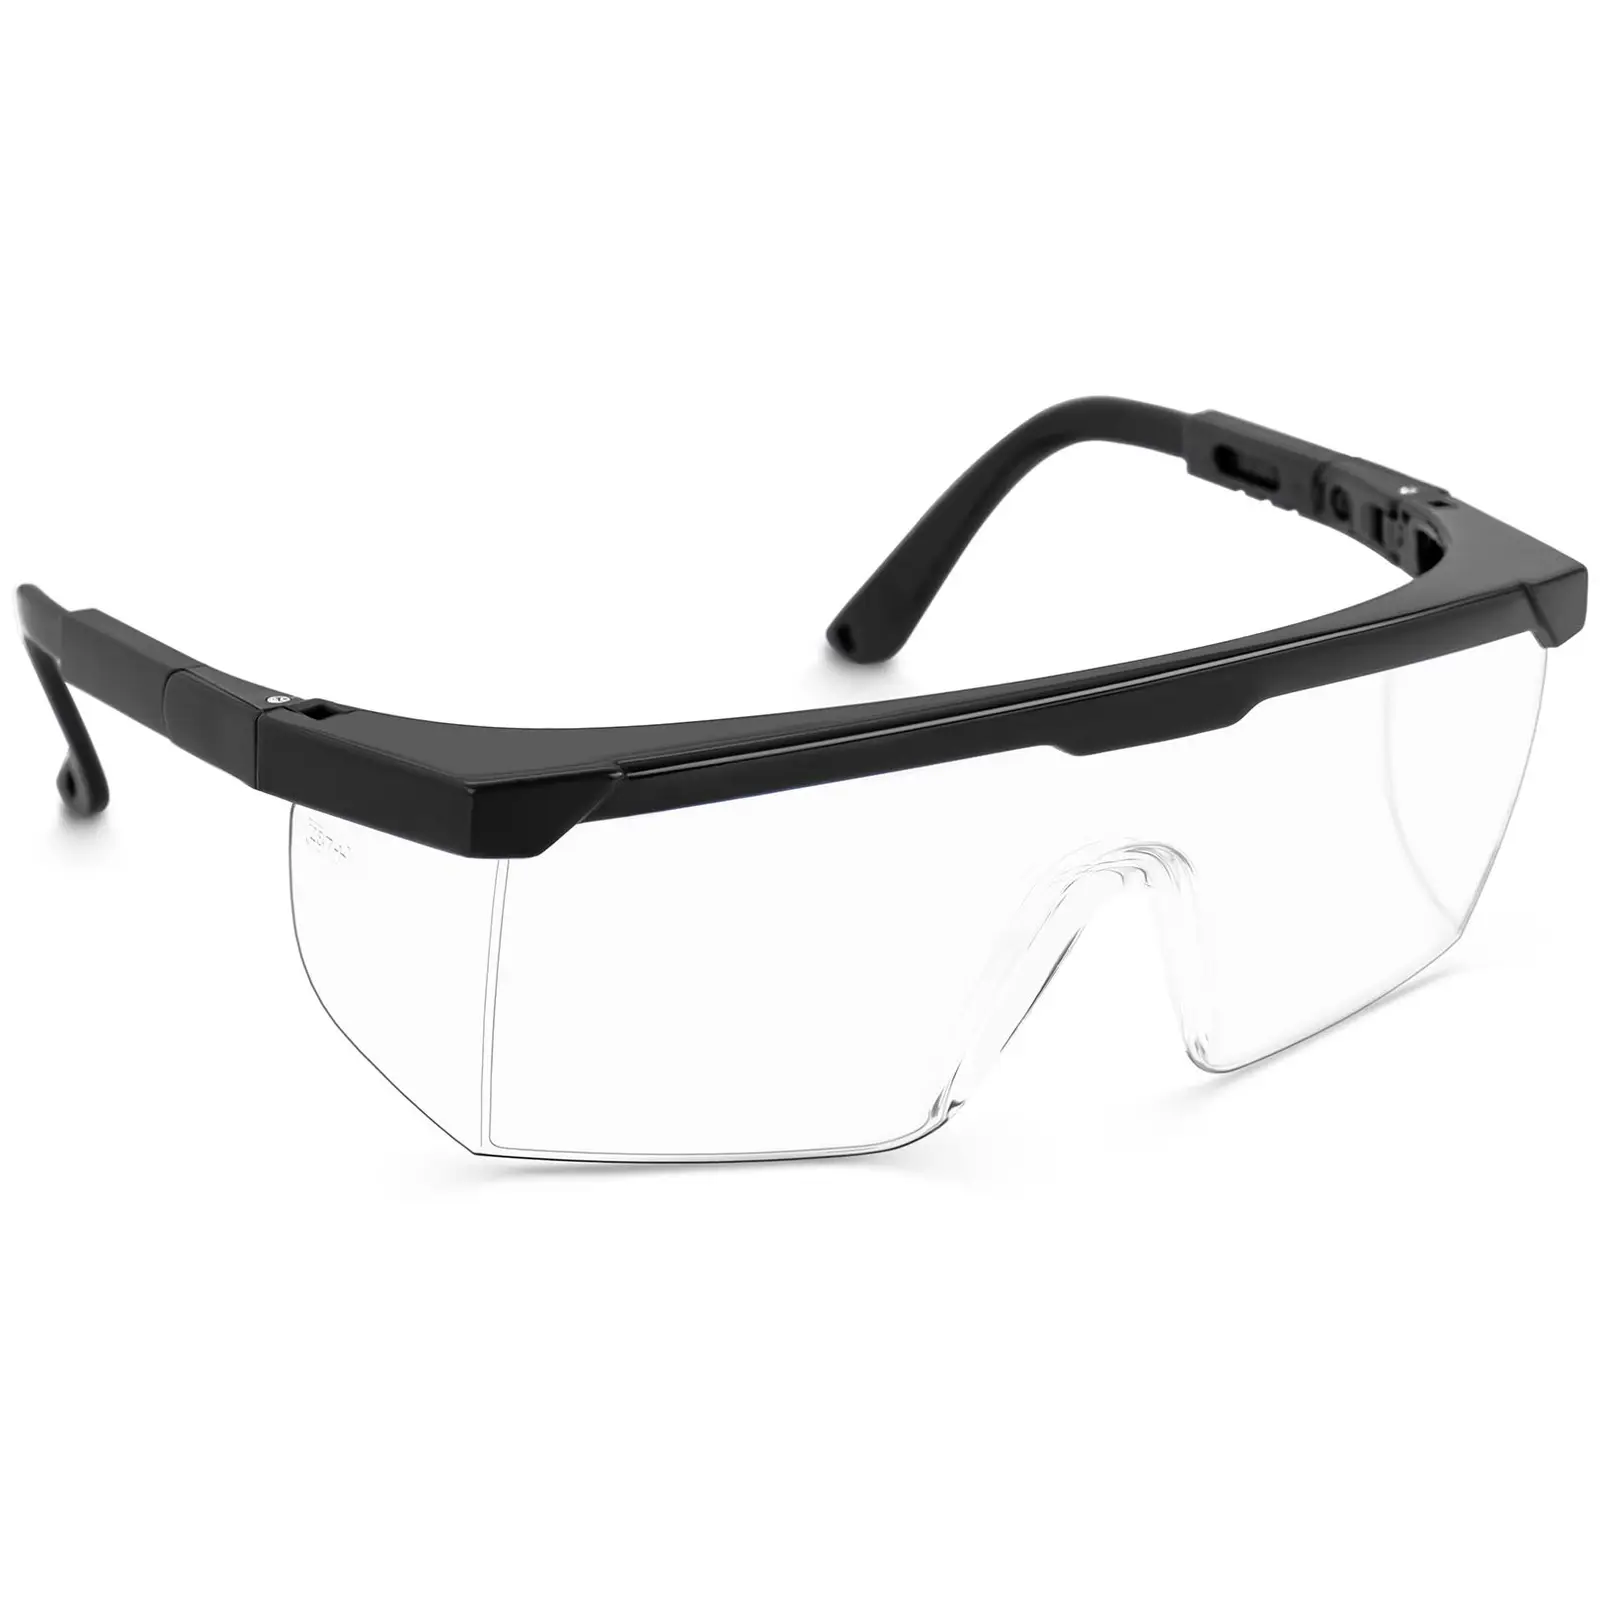 Gafas de seguridad - set de 15 - transparentes - ajustables